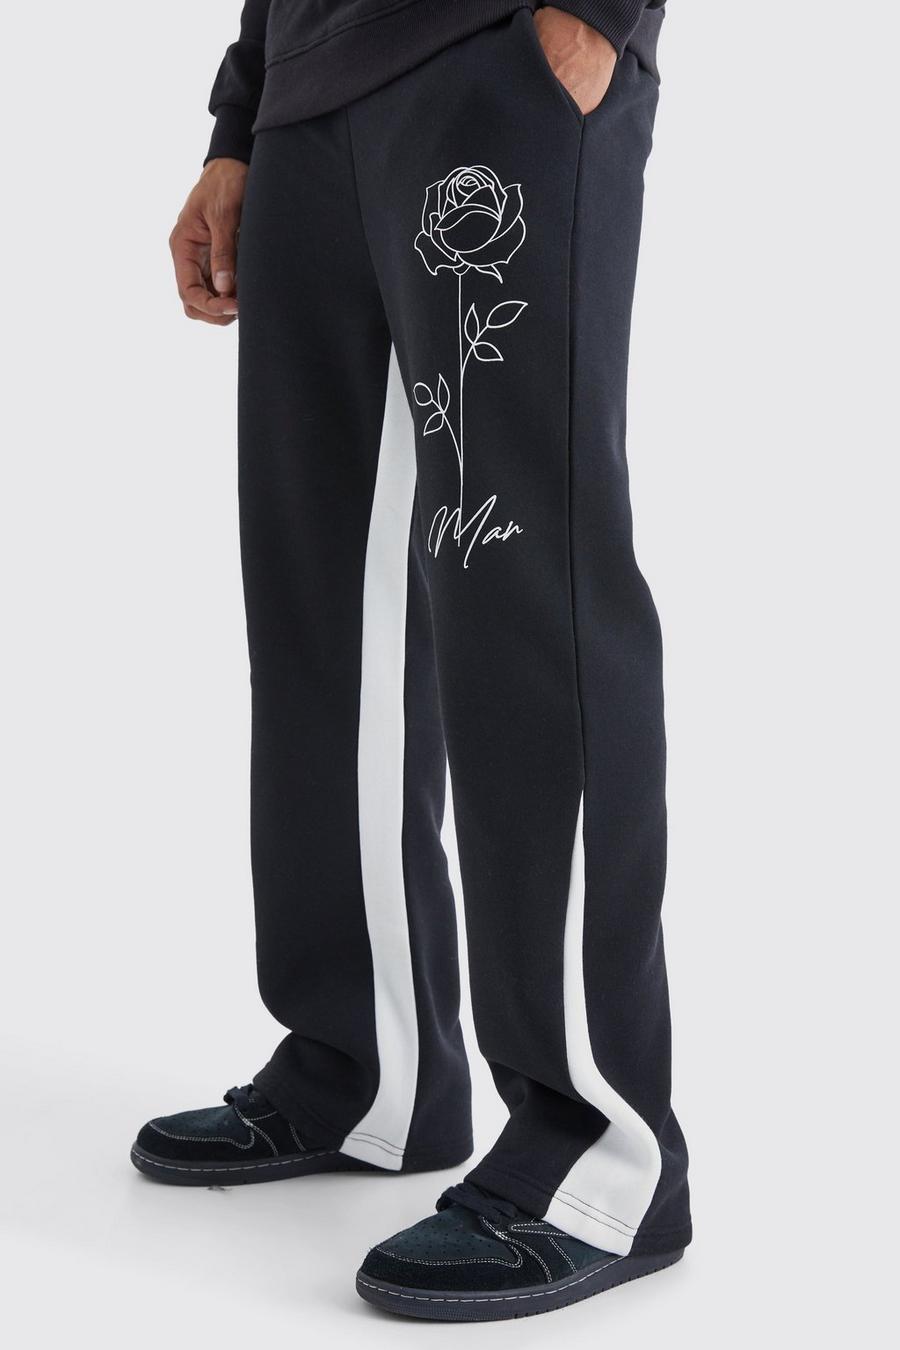 Pantaloni tuta Man con stampa di rose e inserti, Black